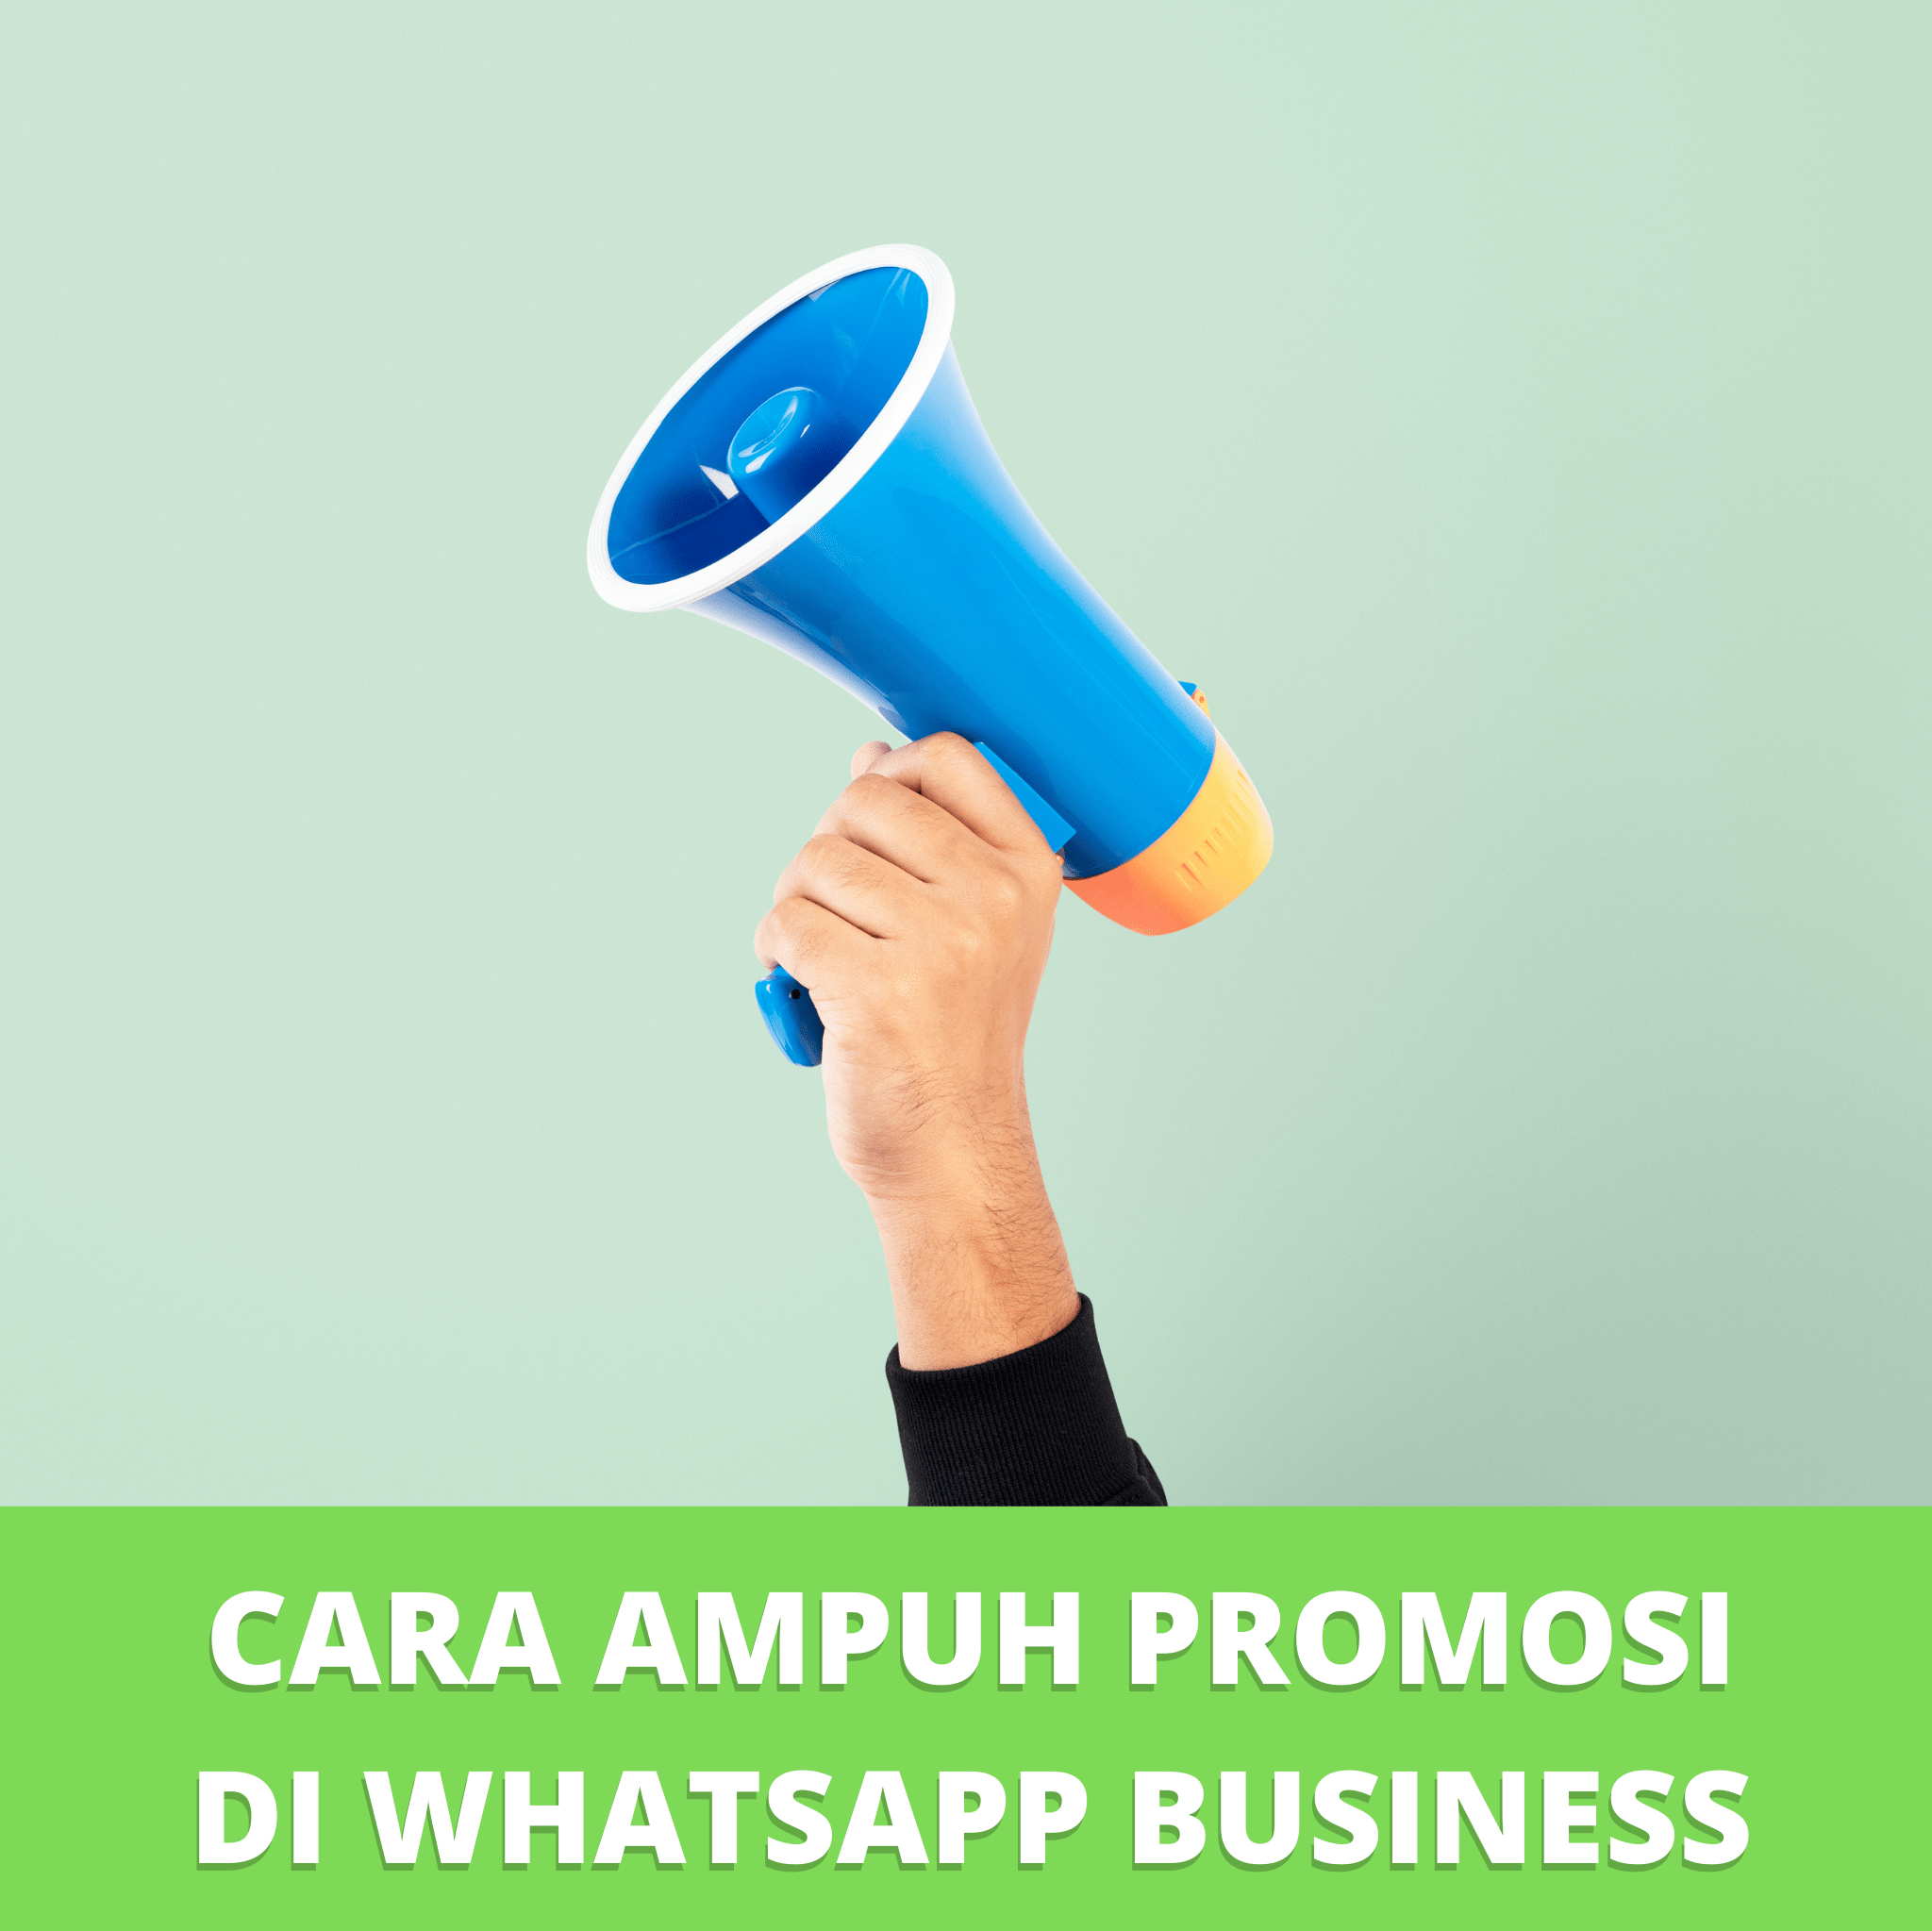 Cara Ampuh Promosi di WhatsApp Business